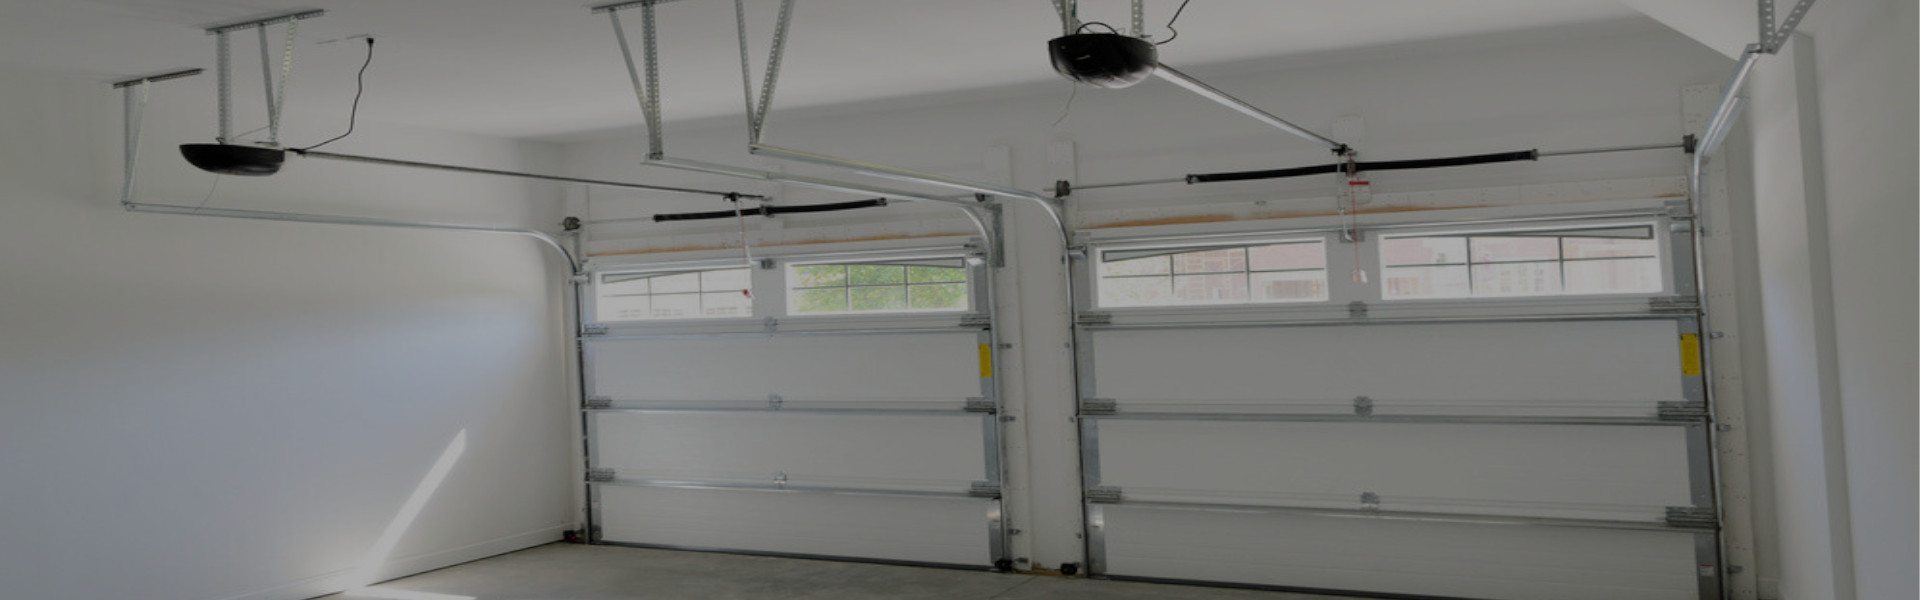 Slider Garage Door Repair, Glaziers in Yeading, UB4